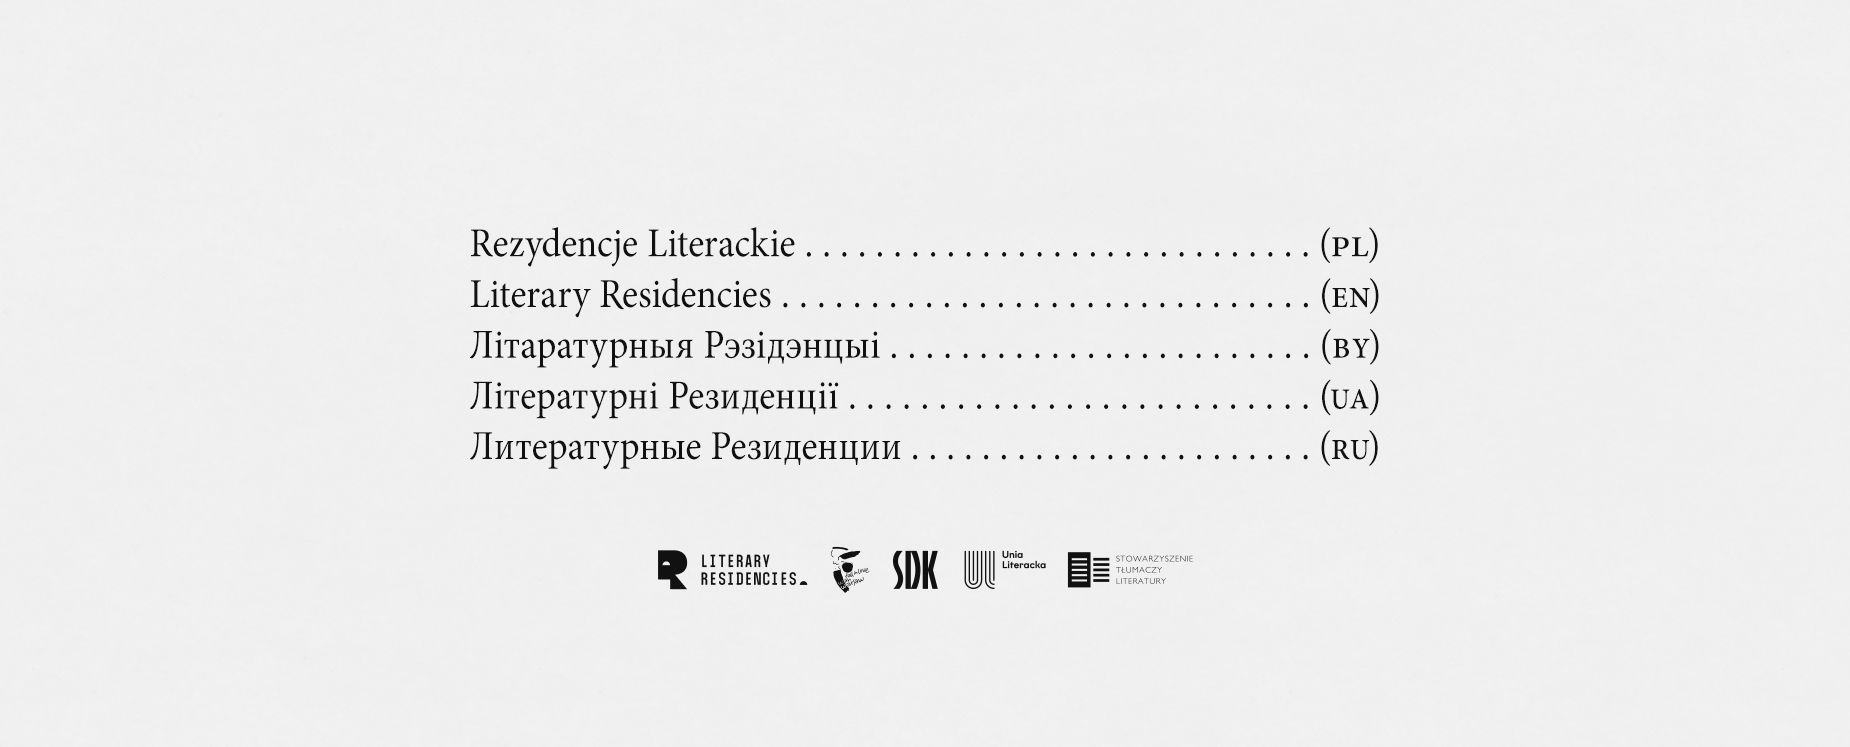 Ilustracja dekoracyjna. Baner zapowiadający rezydencje literackie w Warszawie . na obrazku spis treści zawierający napis "Rezydencje Literackie" w różnych językach.